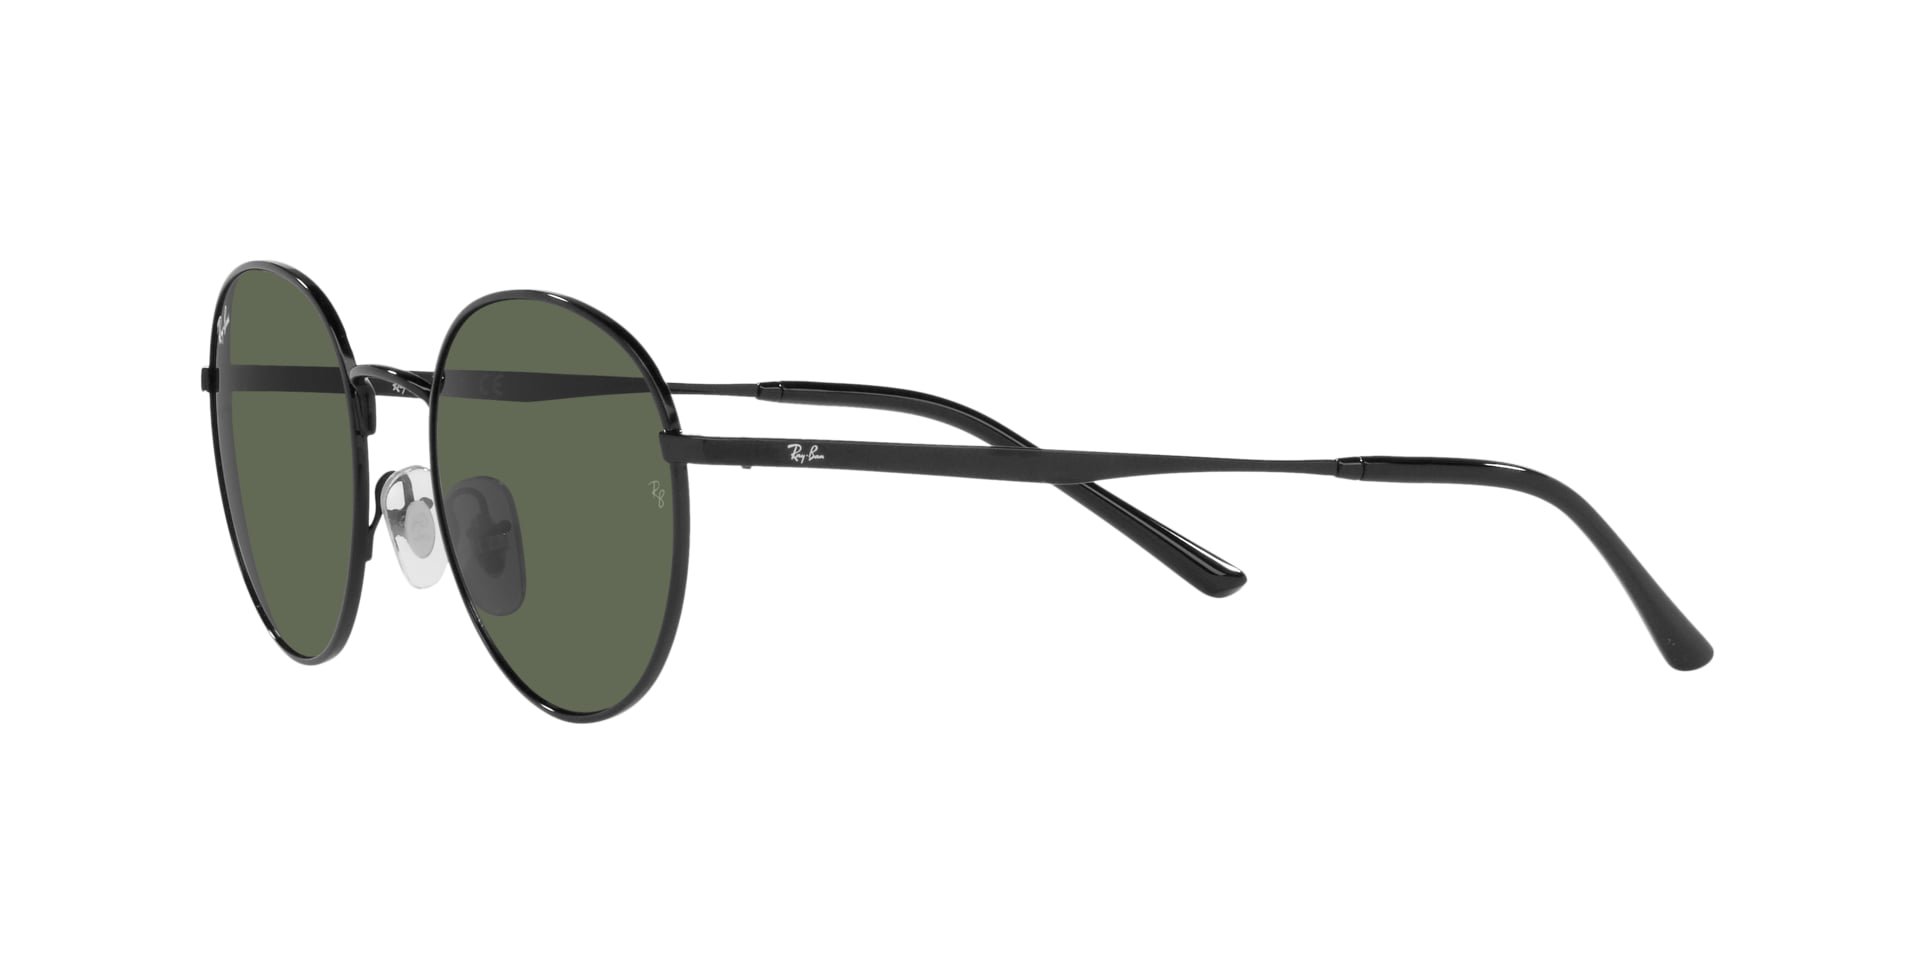 Das Bild zeigt die Sonnenbrille RB3681 002/71 von der Marke RayBan in schwarz.